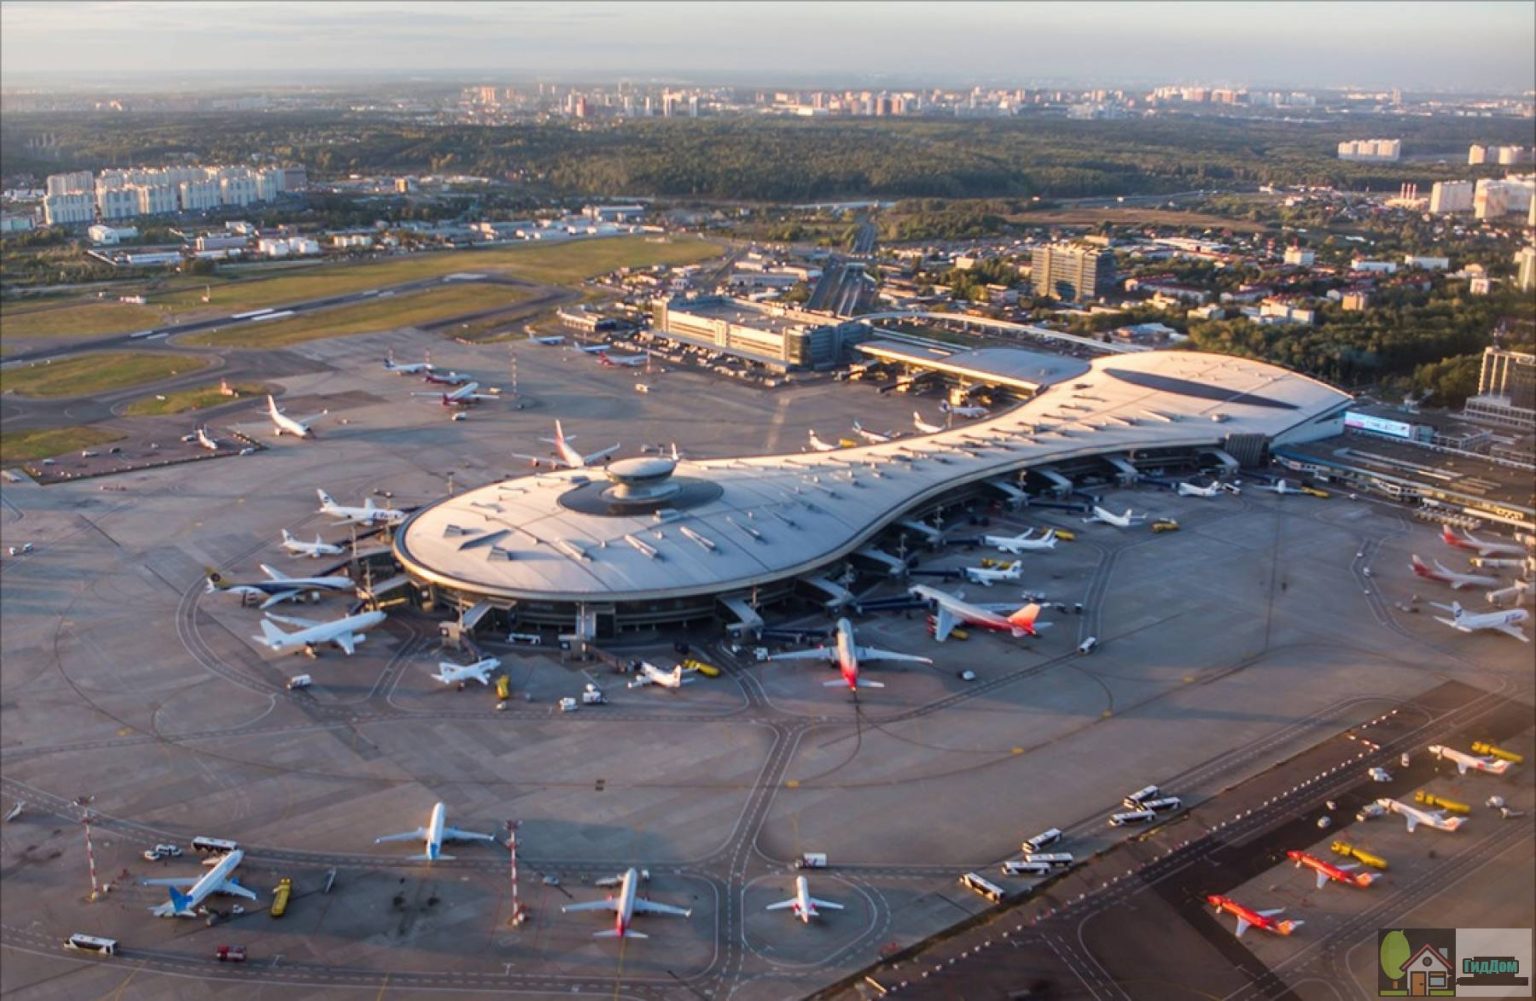 Մոսկվայում ինքնաթիռները սկսել են թռչել տարօրինակ երթուղիներով, ինքնաթիռները չեն կարողացել վայրէջք կատարել Մոսկվայում․ չվերթներ են չեղարկվել